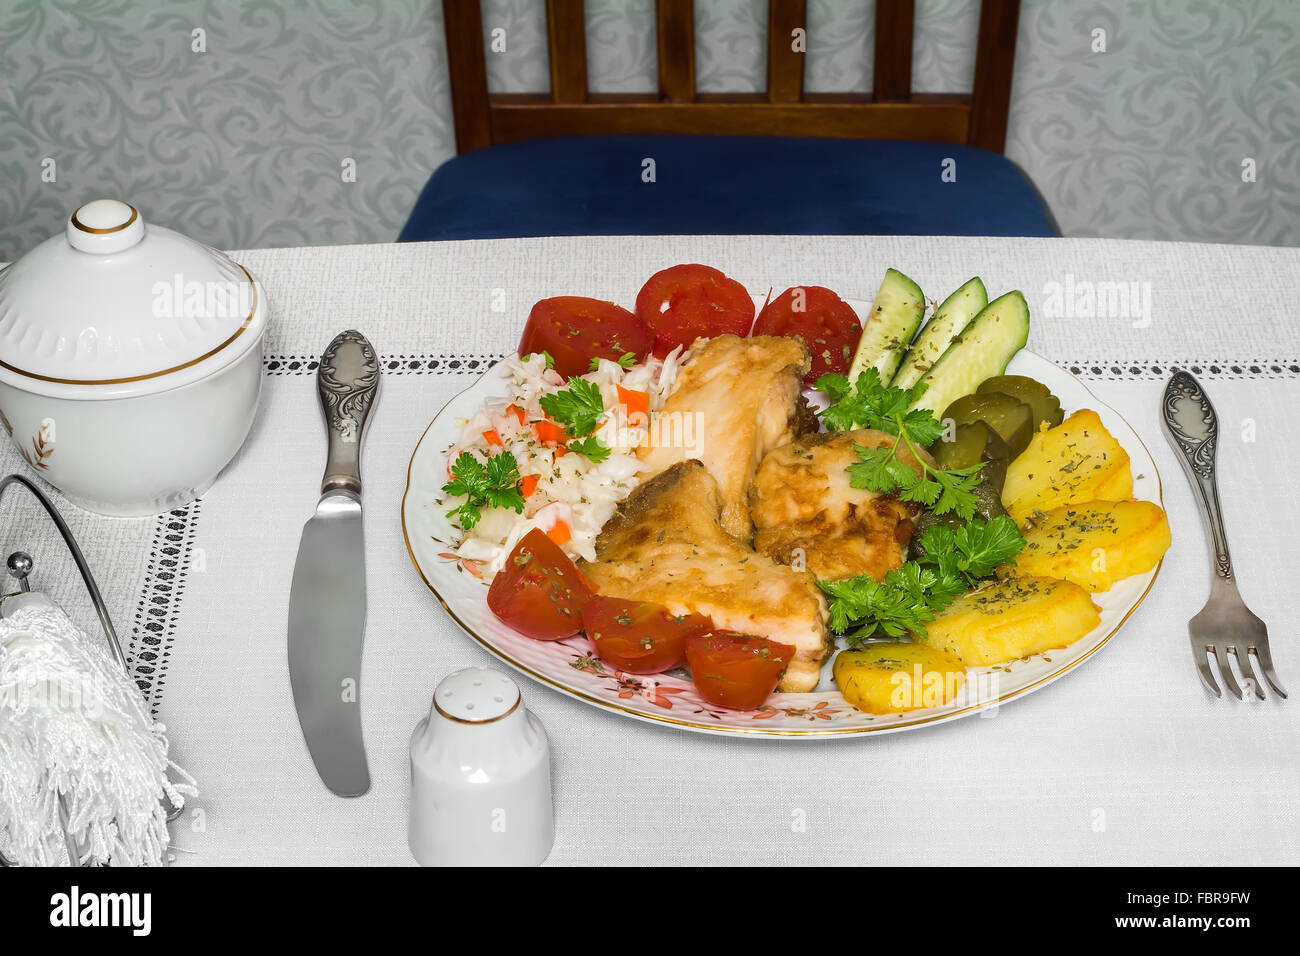 Auf dem Tisch ist eine Platte mit Stücken von lecker gebratenen Fisch und verschiedenen Basimi. Stockfoto